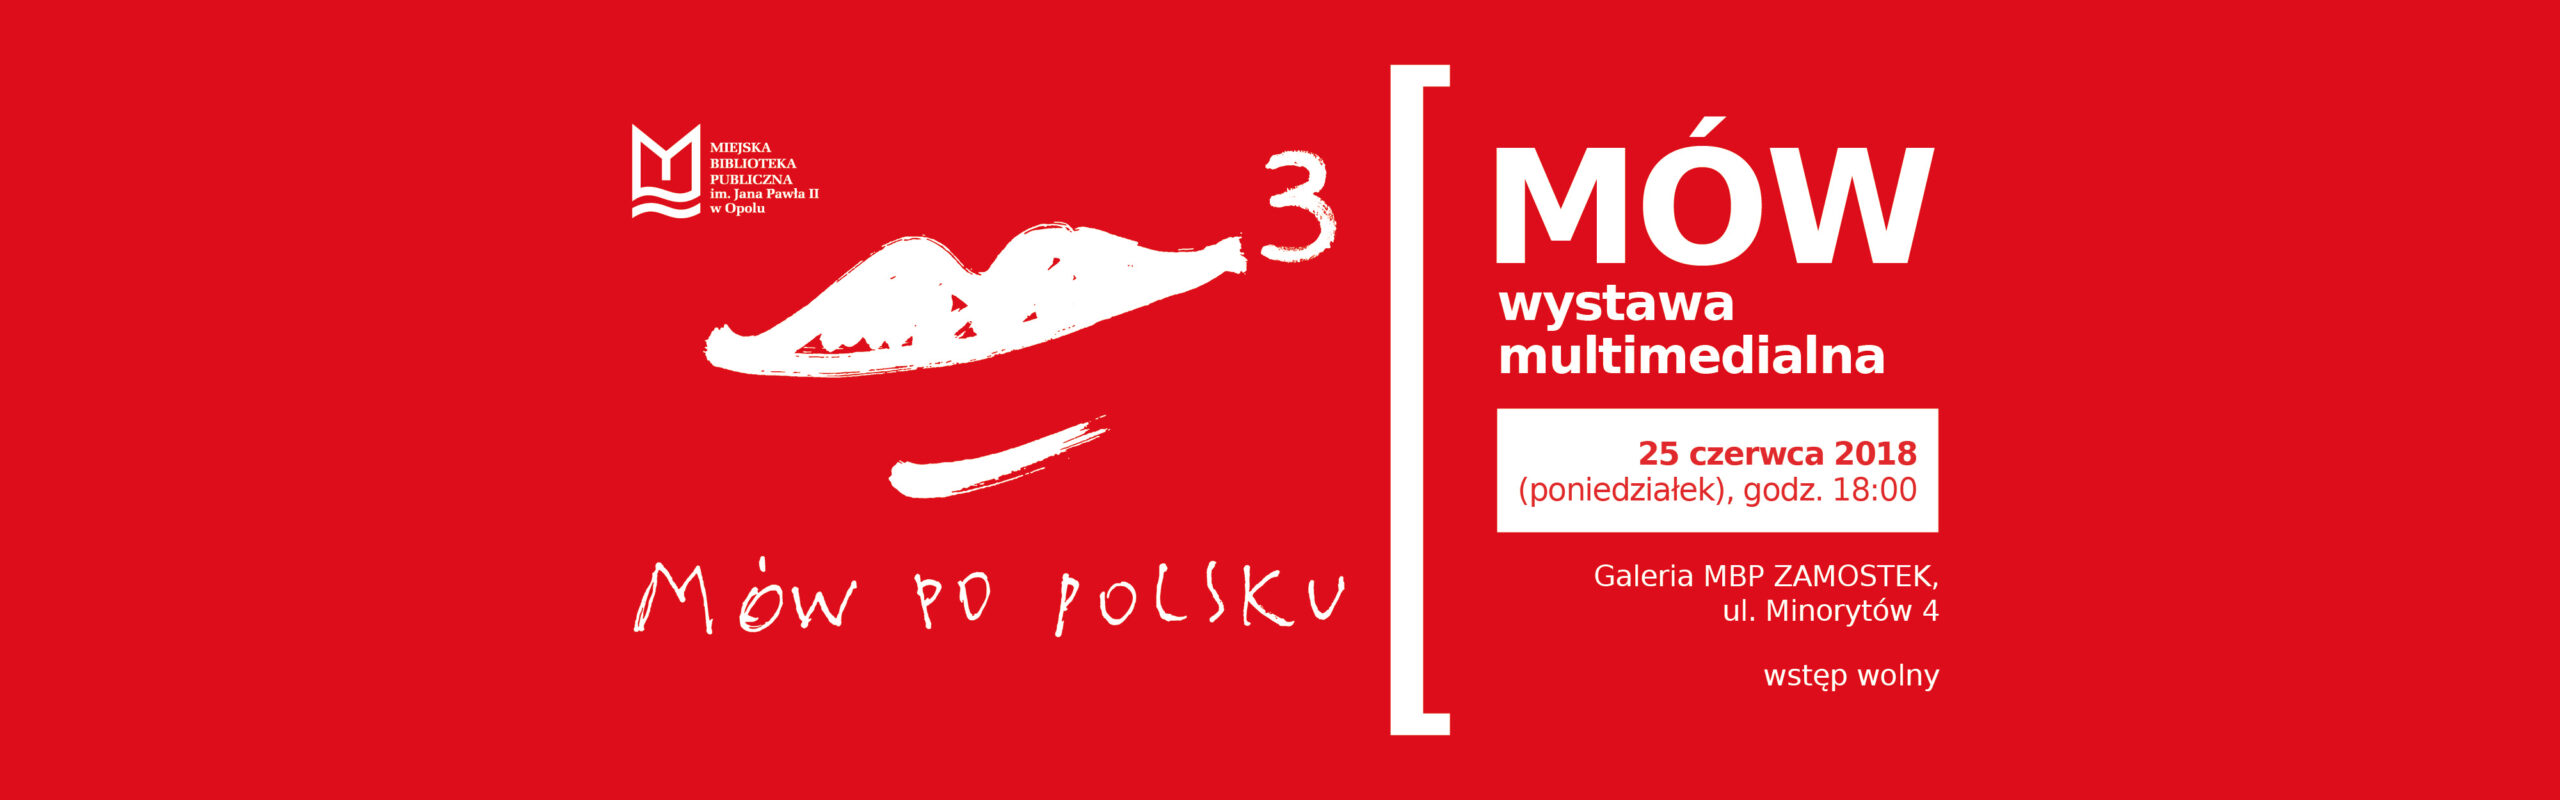 Mów po polsku 3 / Mów – wystawa multimedialna